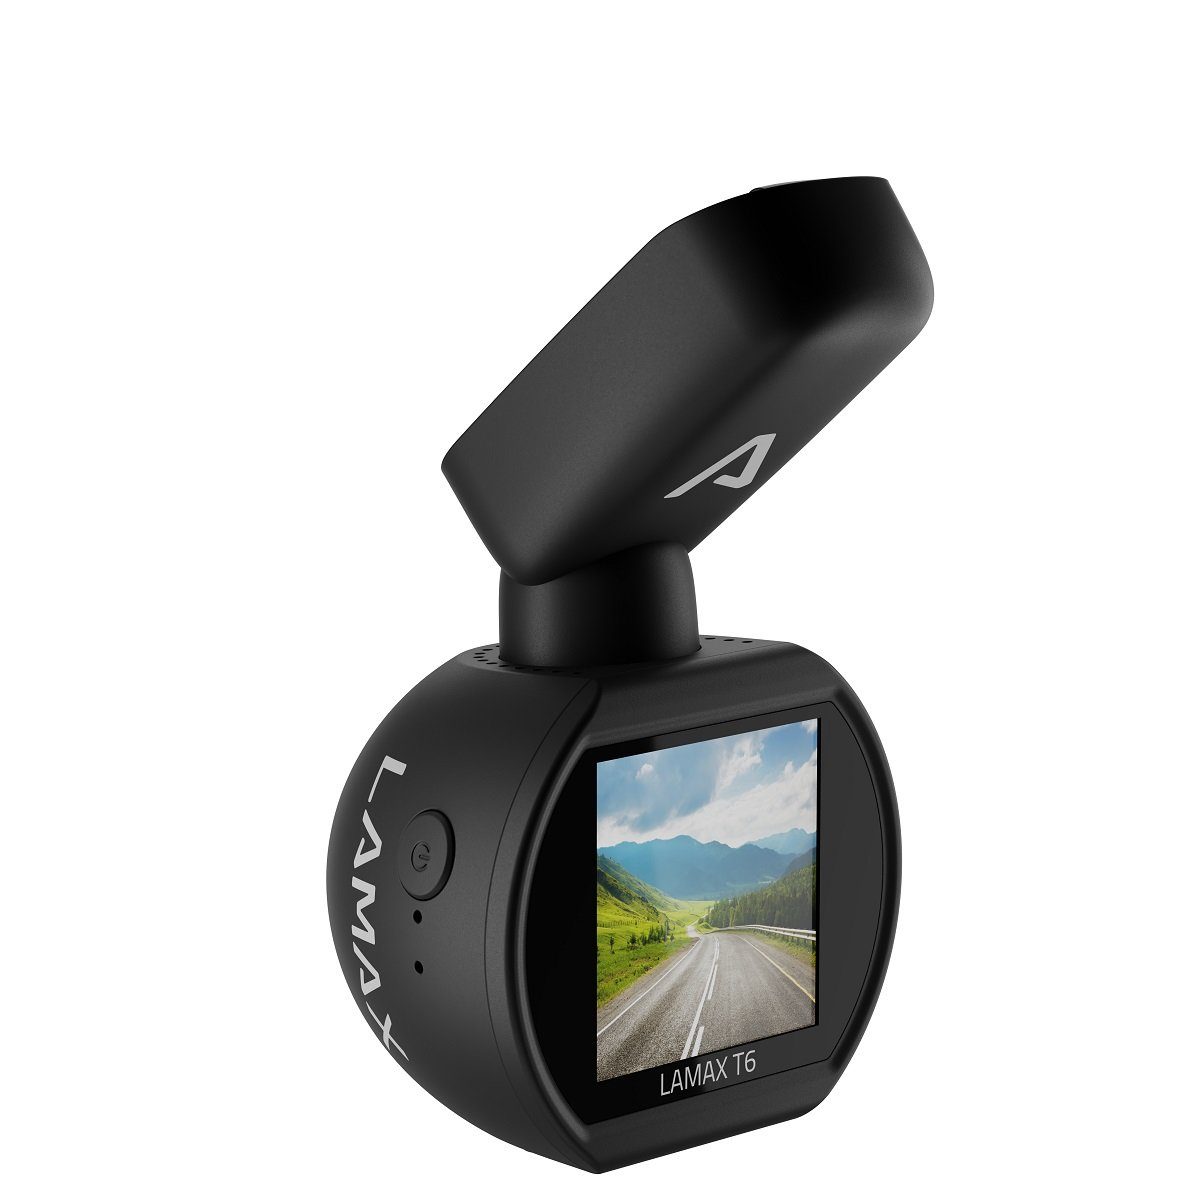 Dashcam HD-Auflösung) (mit Full LAMAX LAMAX T6